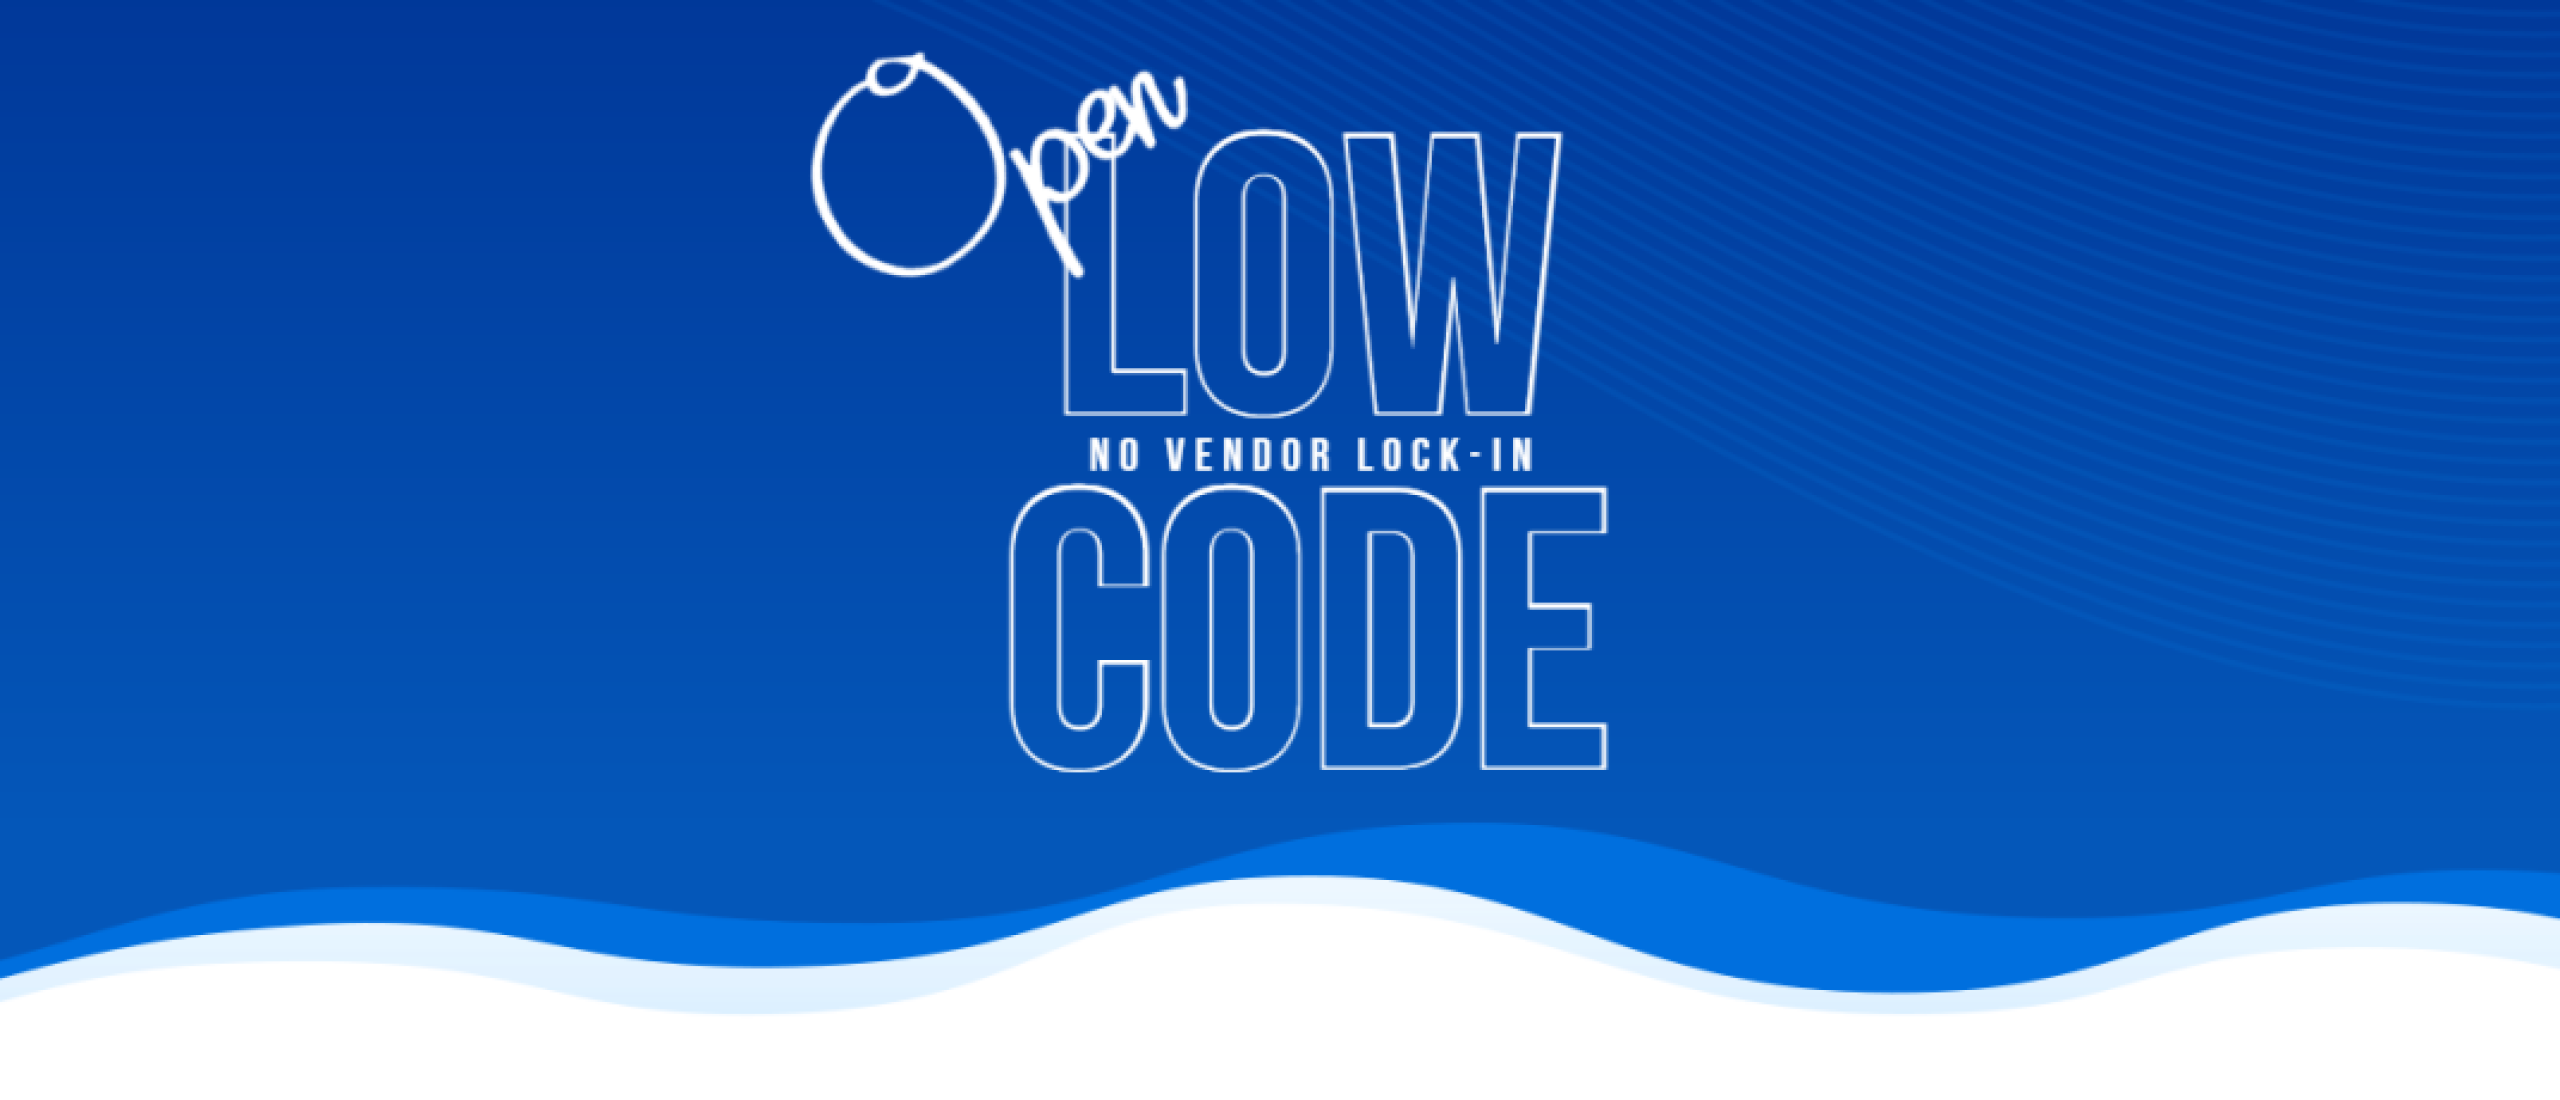 Low Code